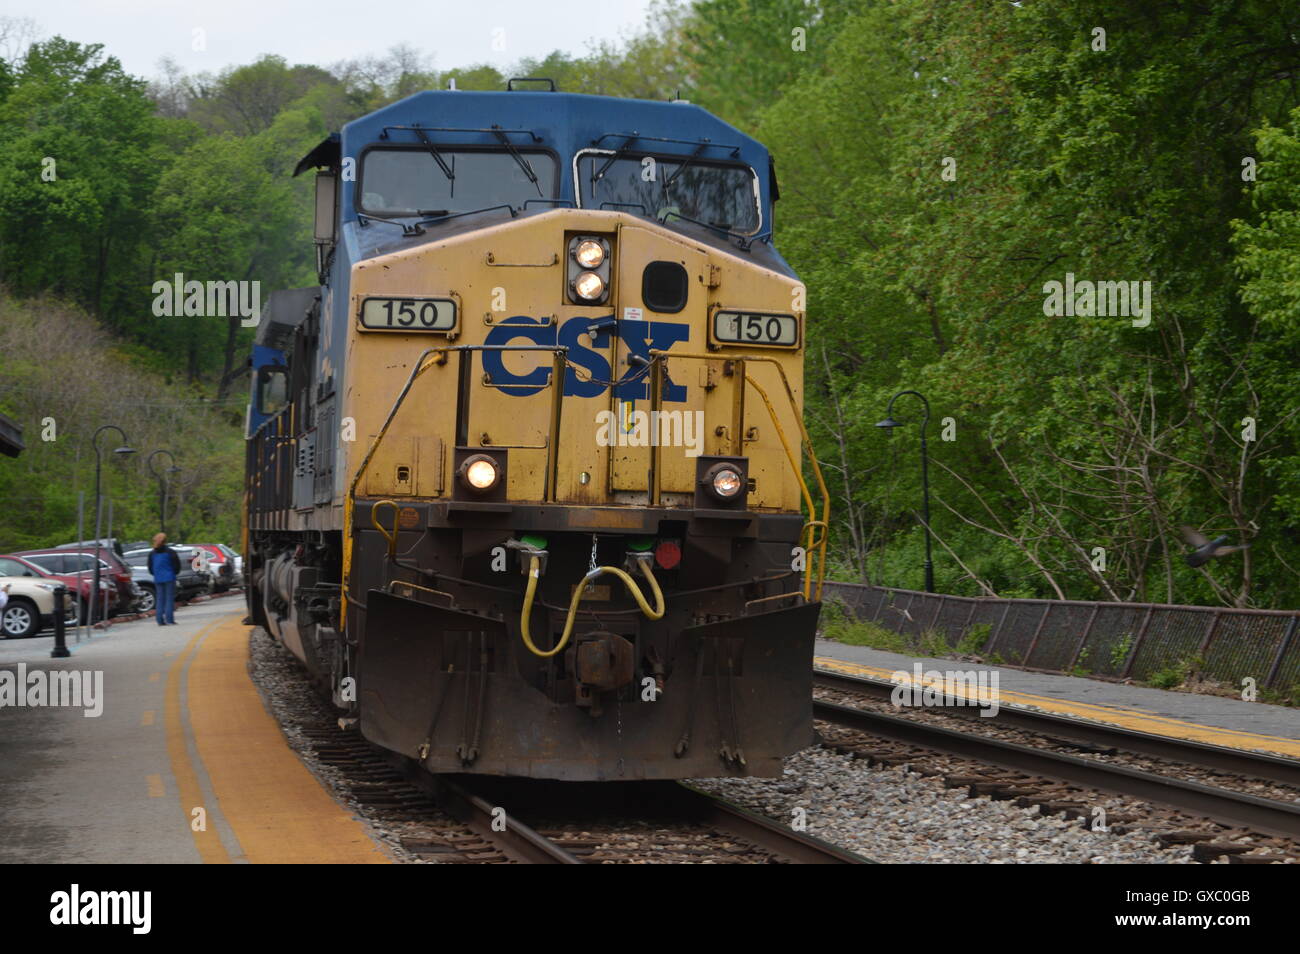 CSX Locomotice #150 en Harpers Ferry, el Condado Jefferson, Virginia Occidental, WV US Foto de stock